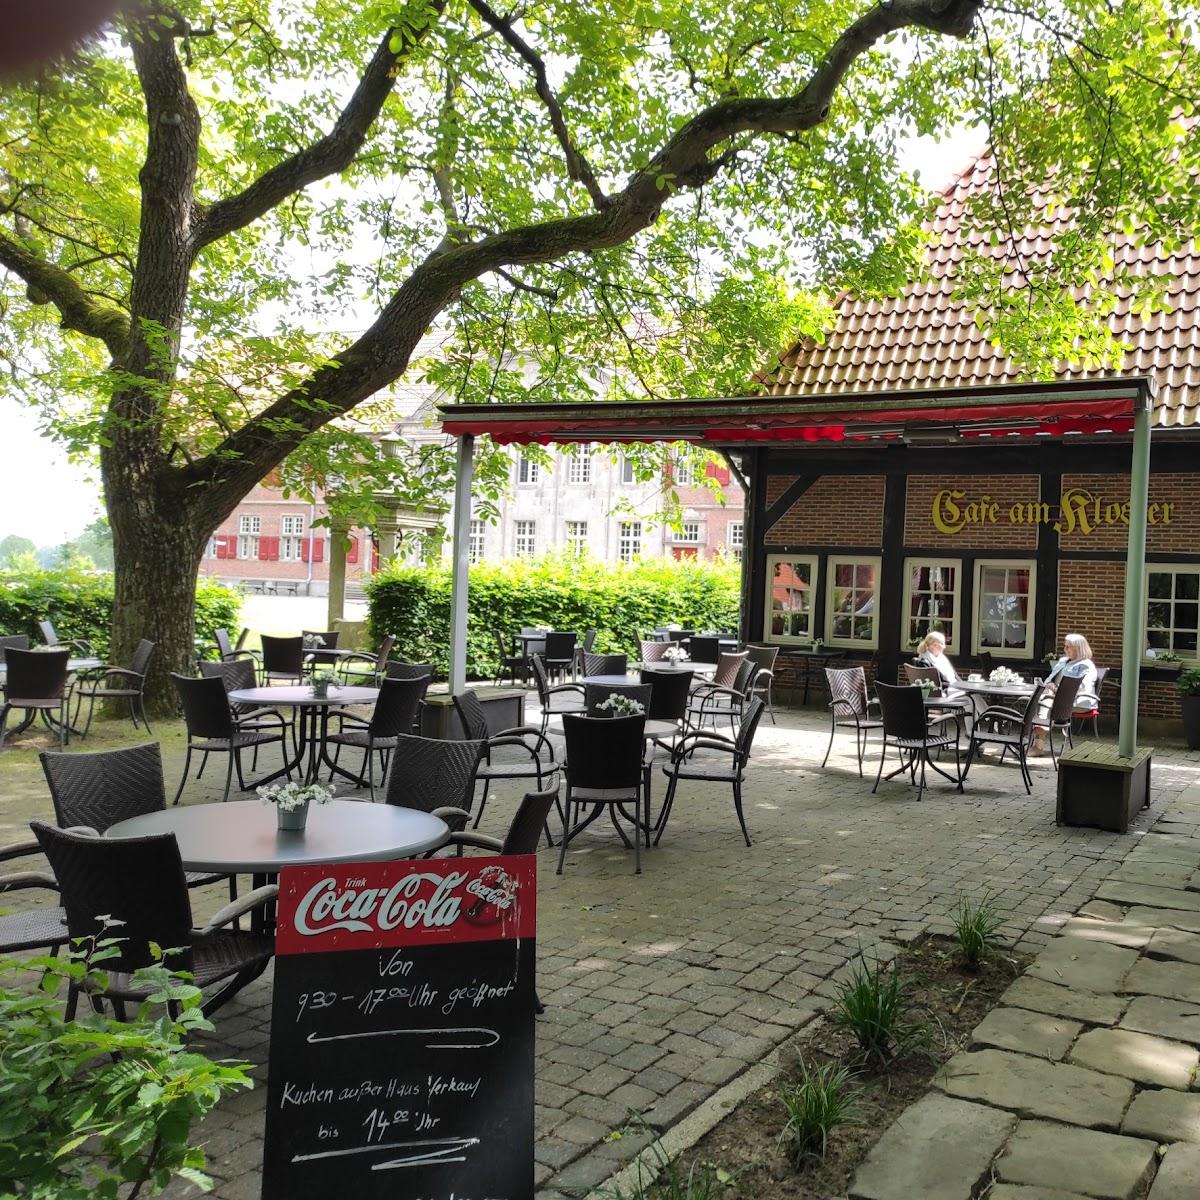 Restaurant "Café am Kloster" in Nordhorn